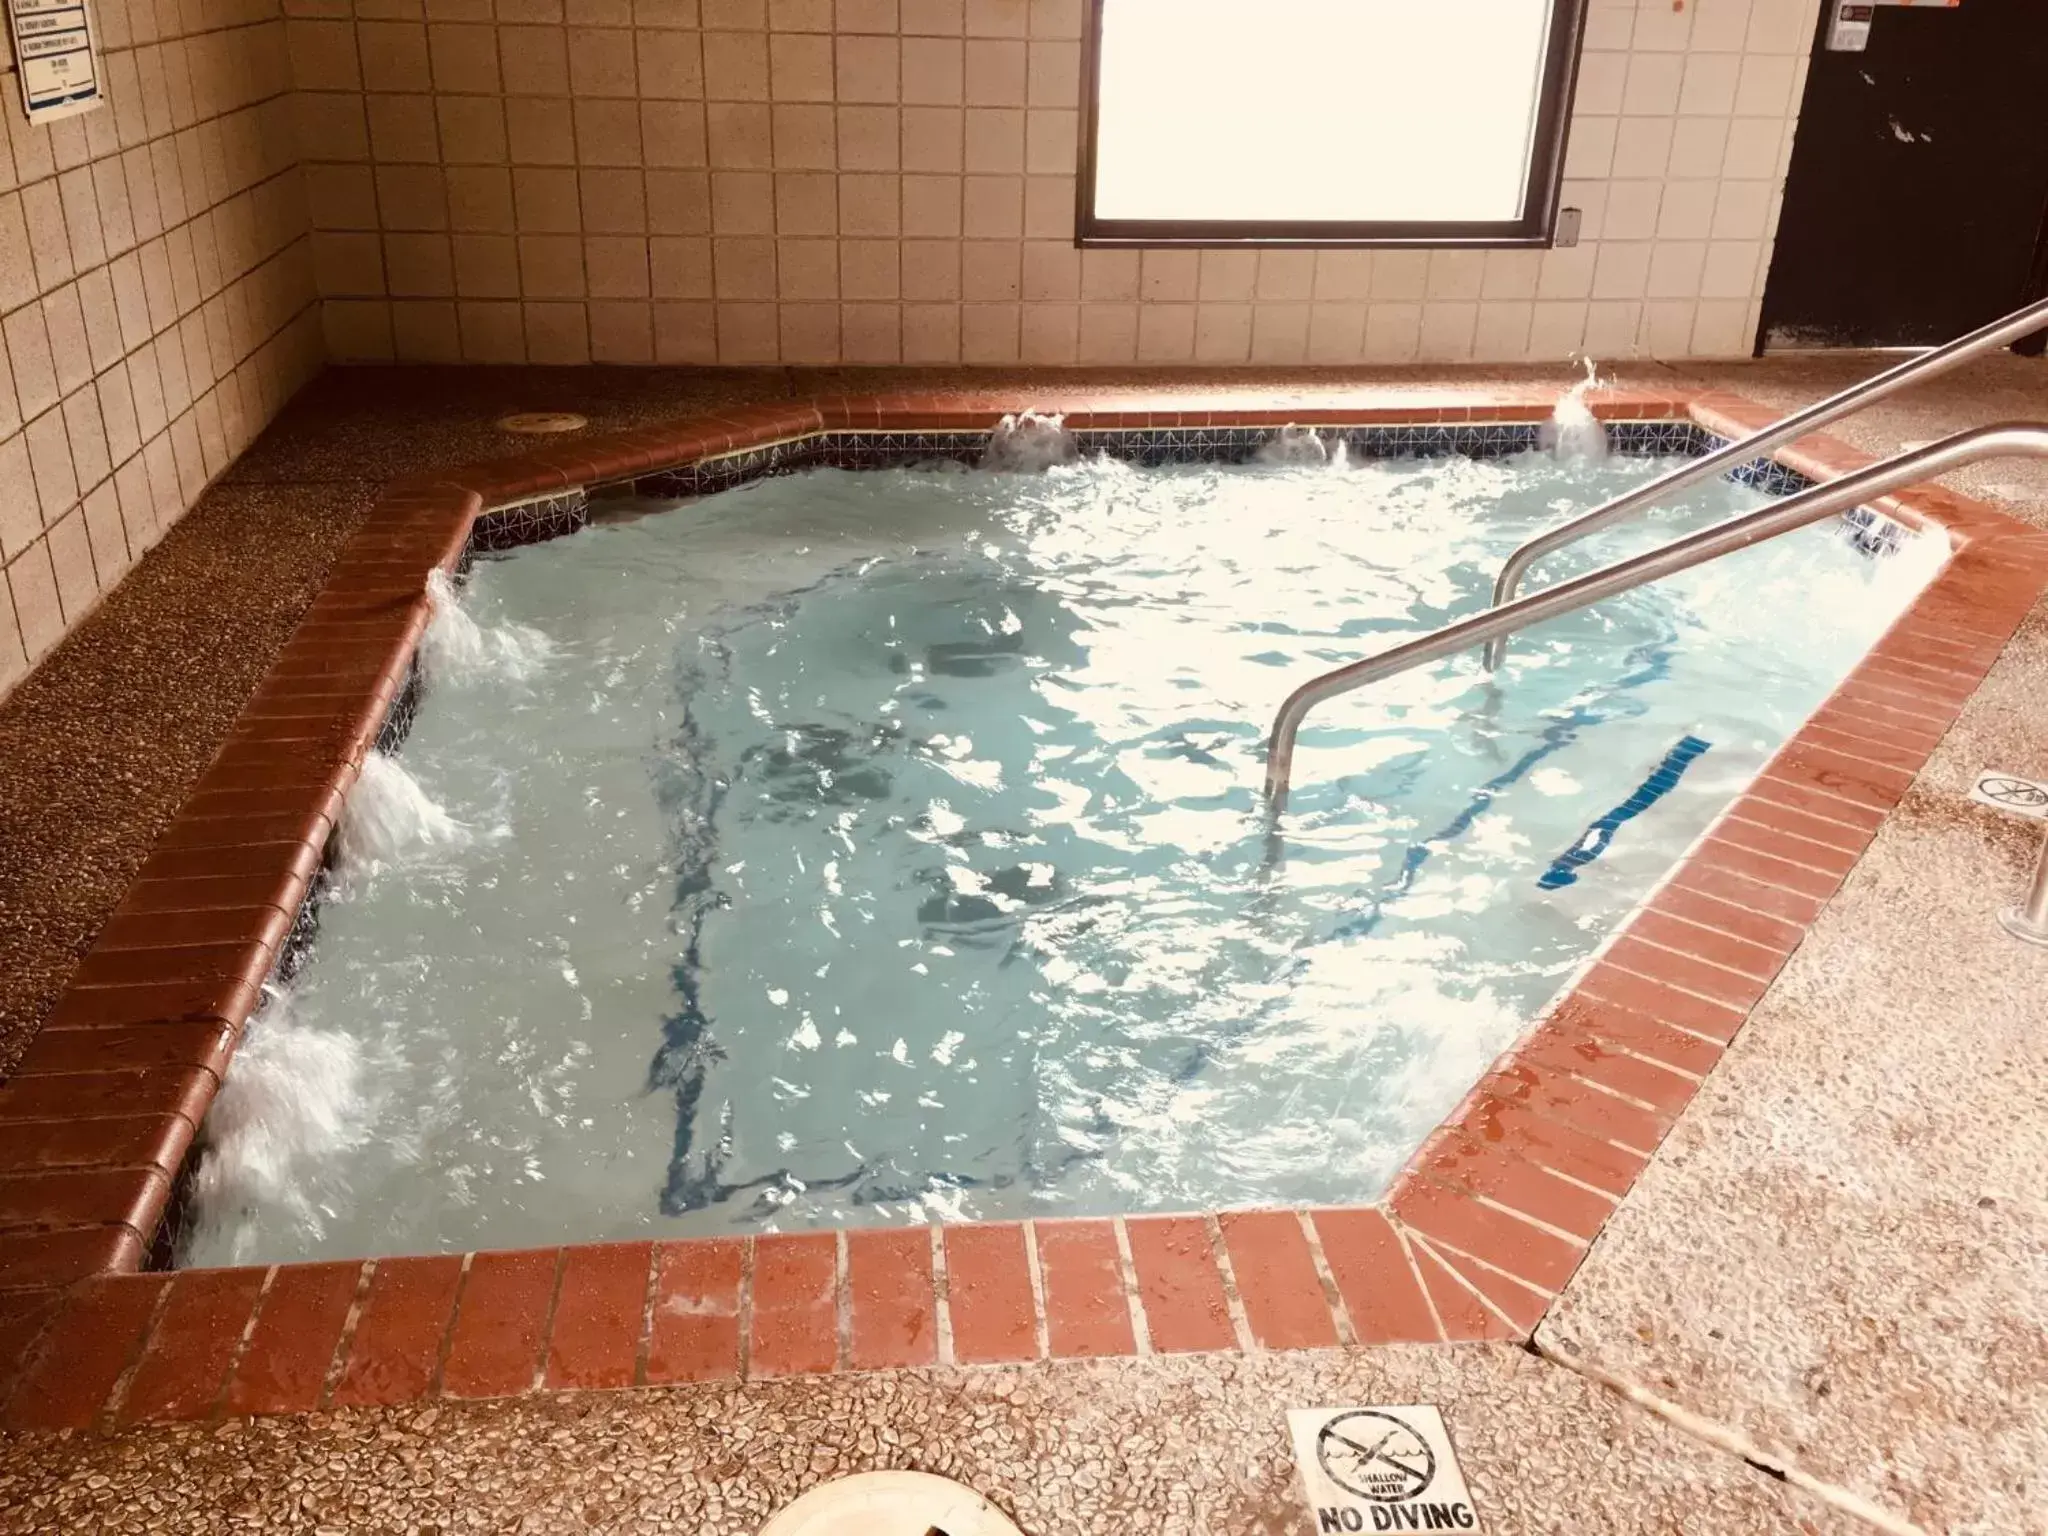 Swimming Pool in Regency Inn and Suites